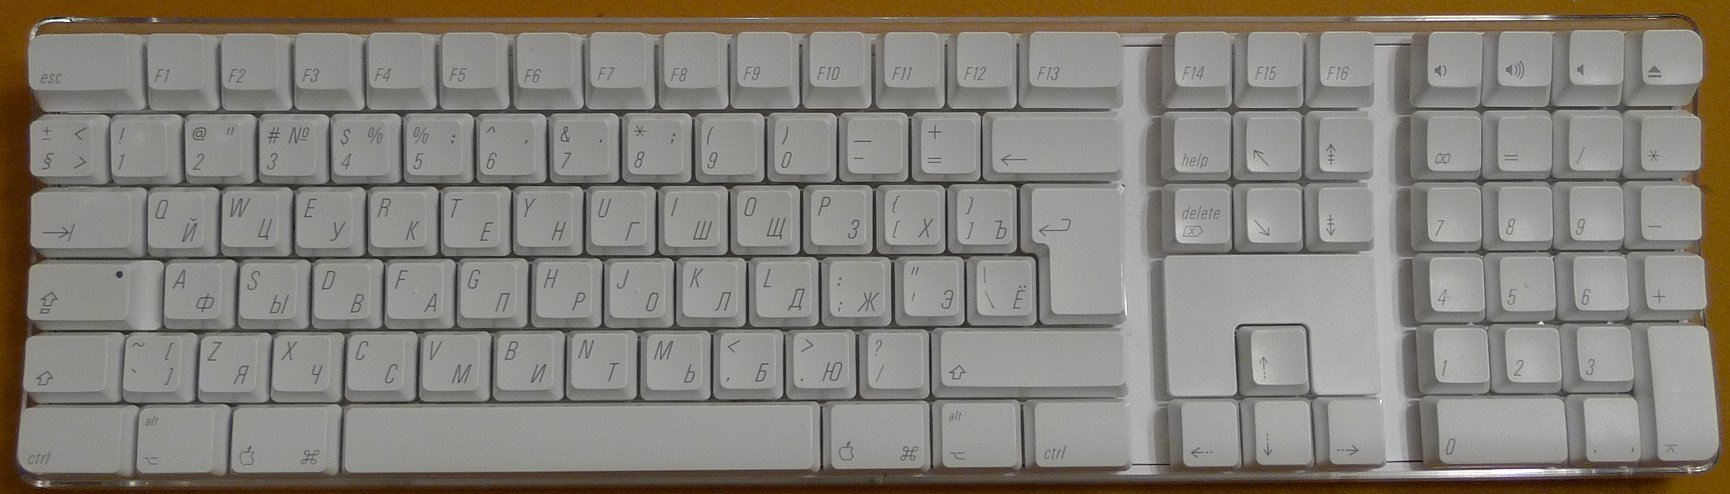 Apple Keyboard A1016 Russian layout